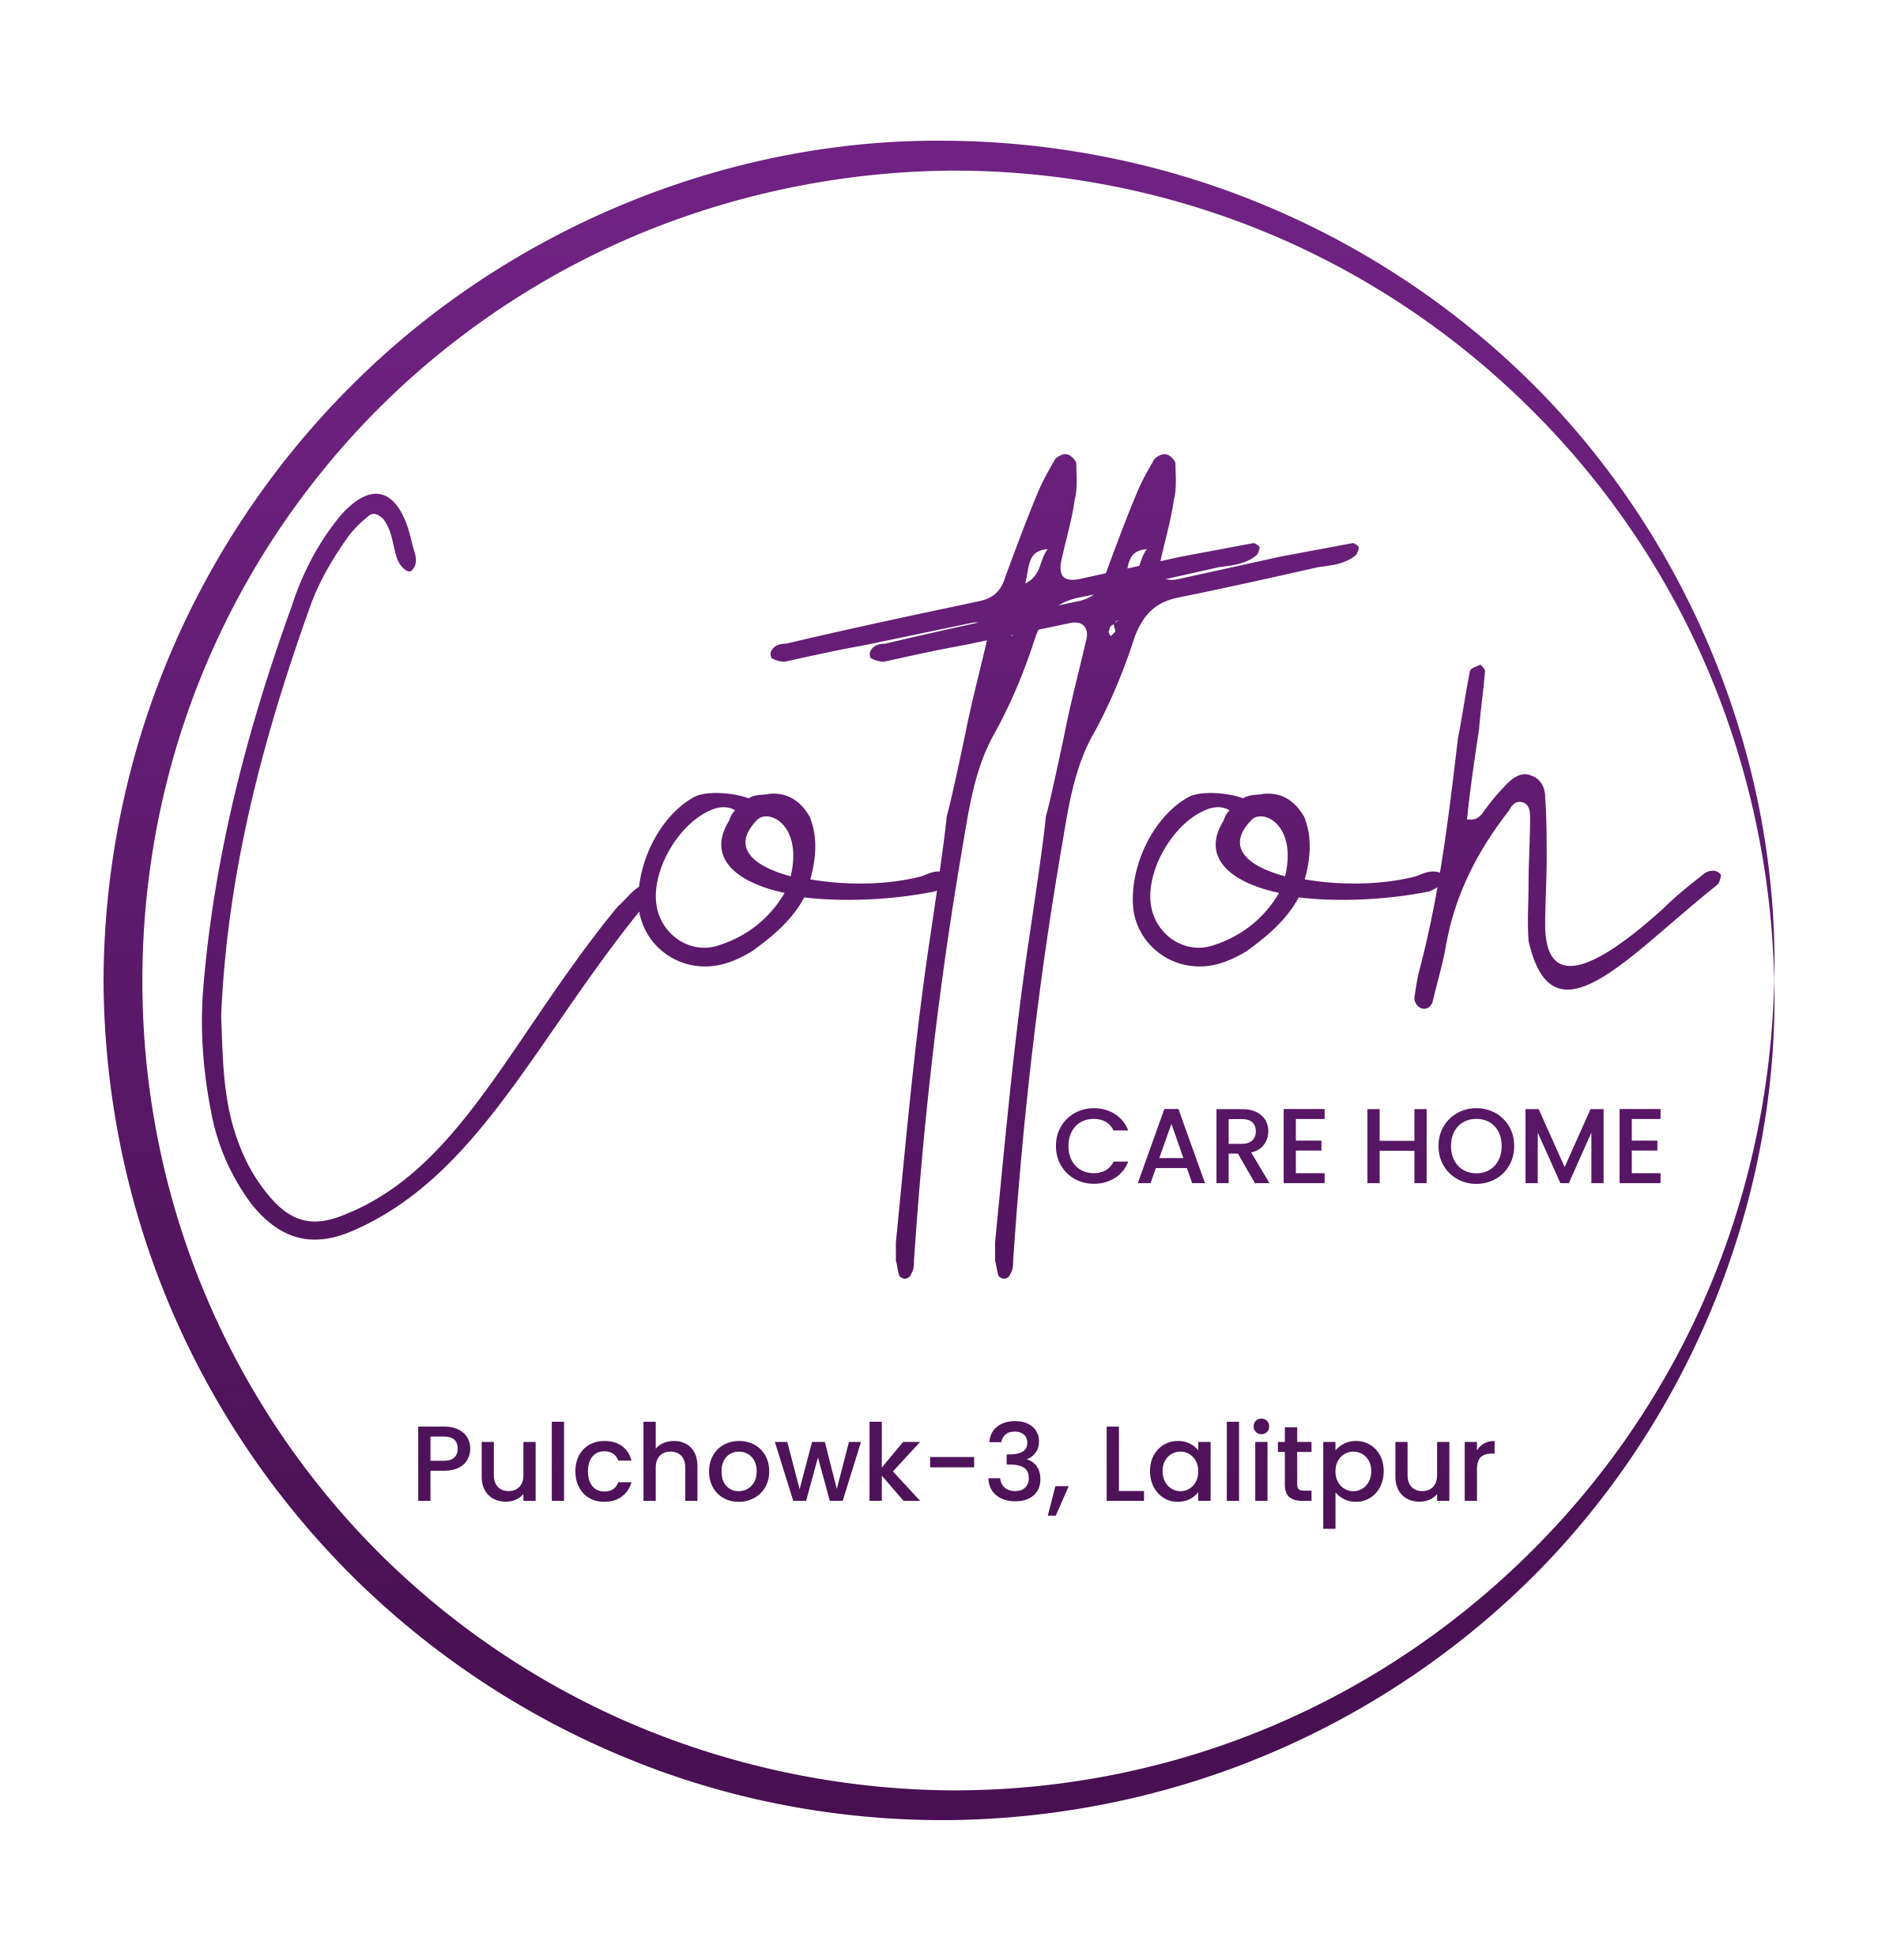 Cotton Care home